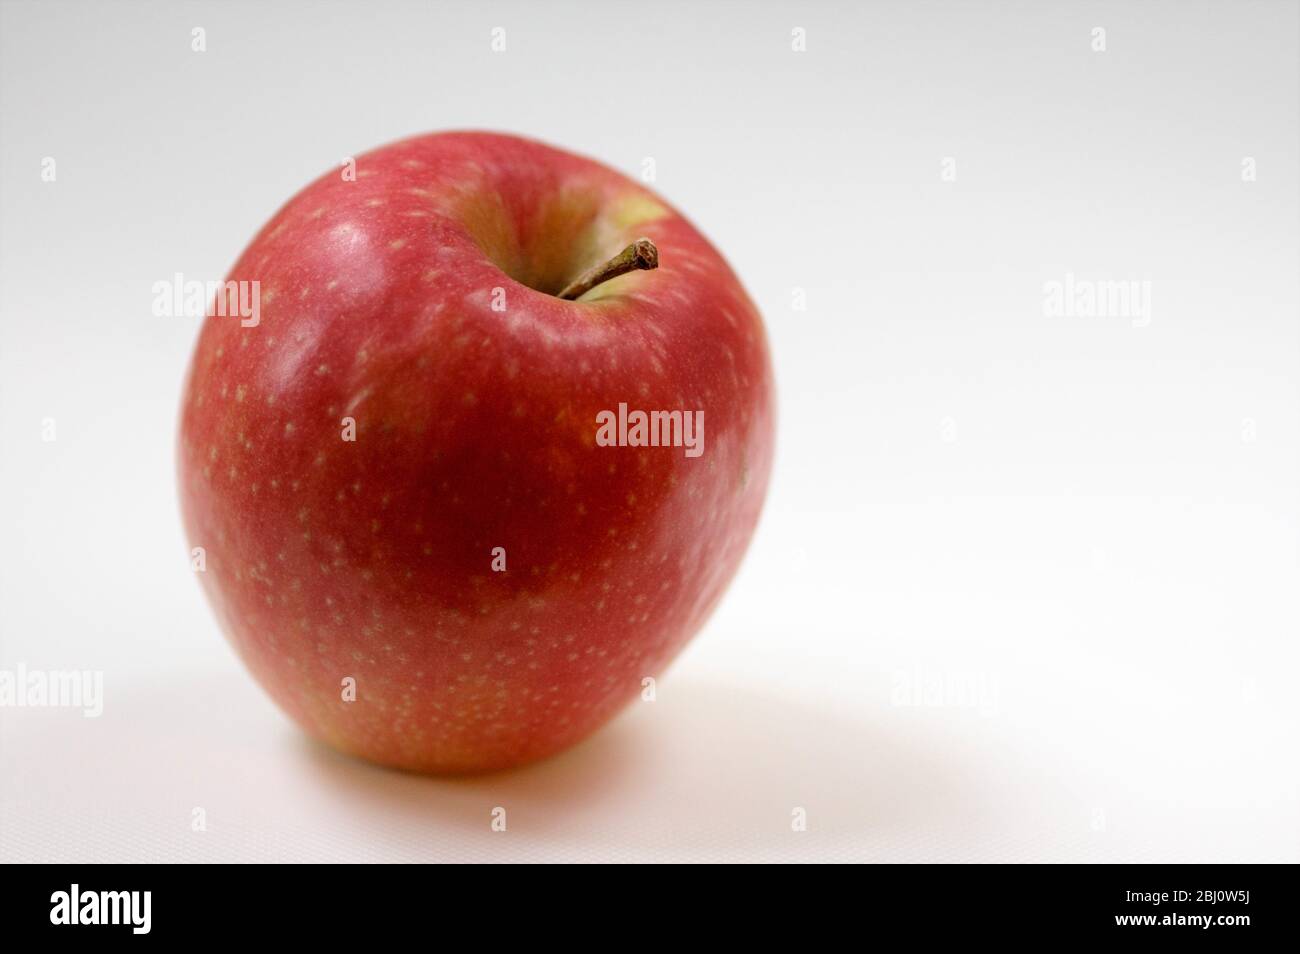 Einzelner glänzender roter Apfel auf weißem Hintergrund - Stockfoto